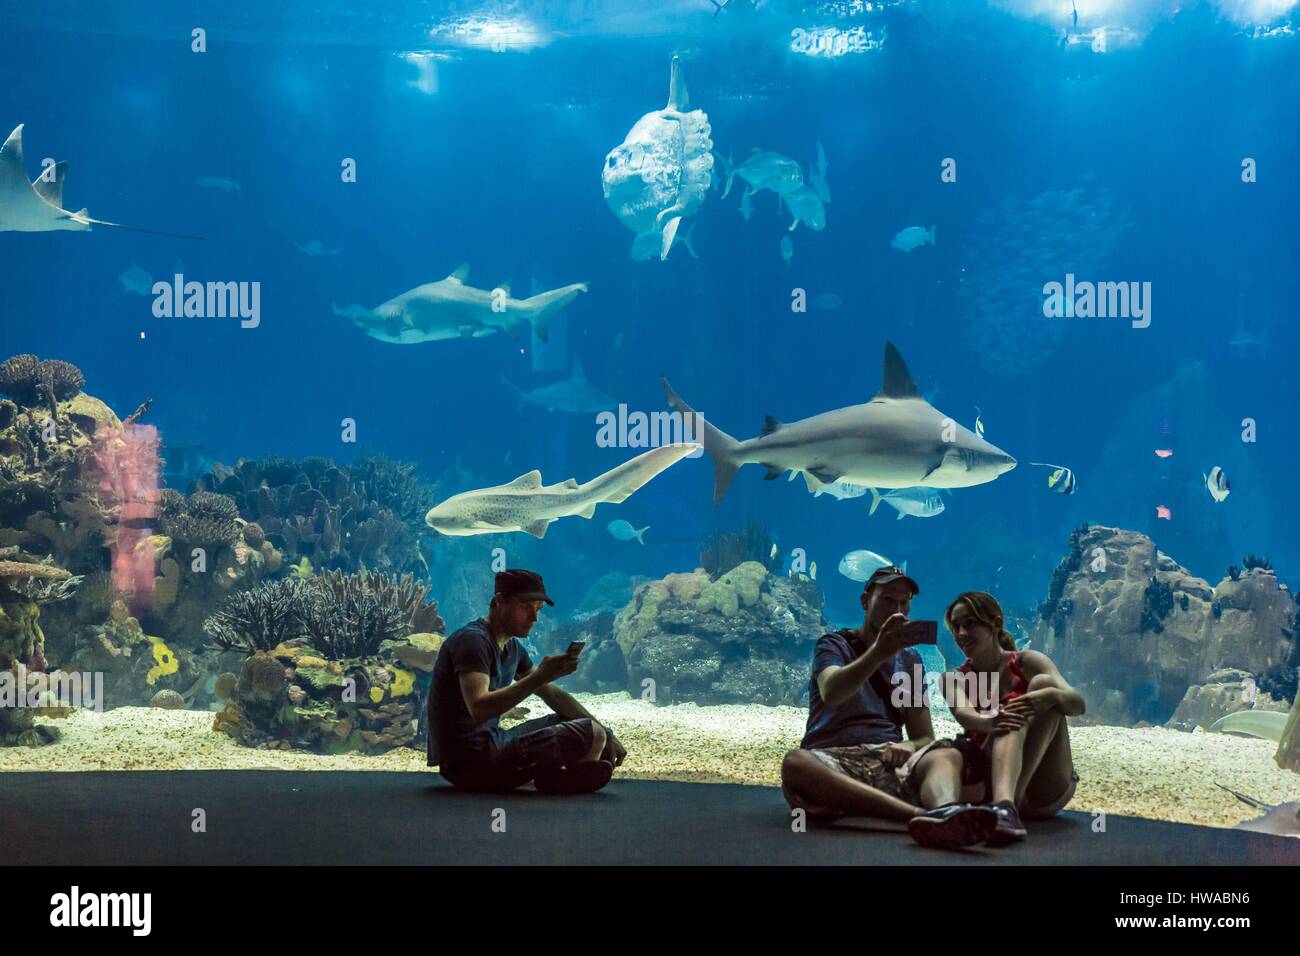 Il Portogallo, Lisbona, Parque das Nacoes (Nazioni' Park) costruito per l'Expo Universale 98 Esposizione Mondiale, Oceanario (Oceanarium), l'acquario Foto Stock